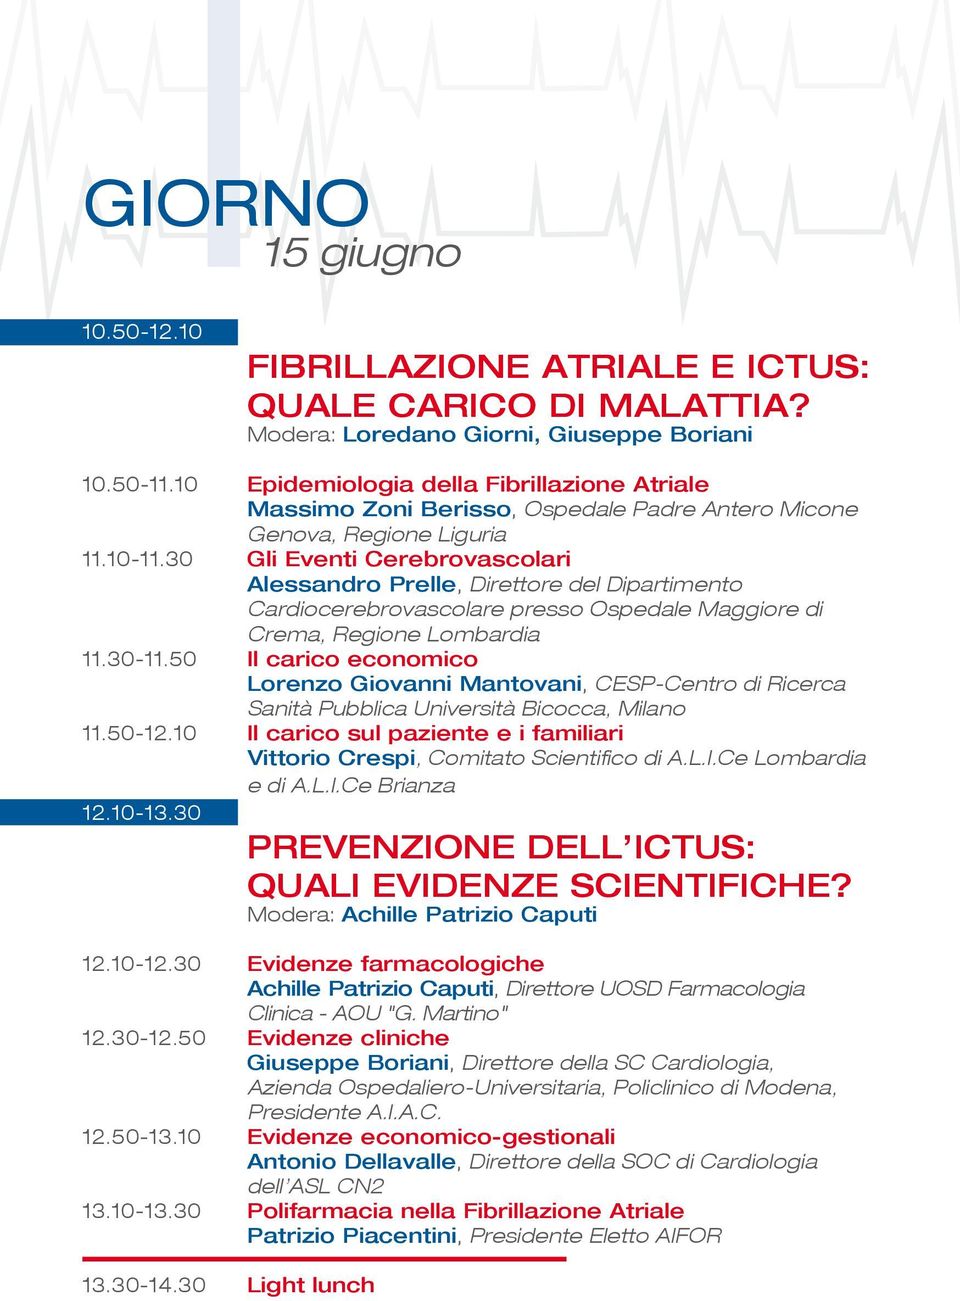 30 Gli Eventi Cerebrovascolari Alessandro Prelle, Direttore del Dipartimento Cardiocerebrovascolare presso Ospedale Maggiore di Crema, Regione Lombardia 11.30-11.